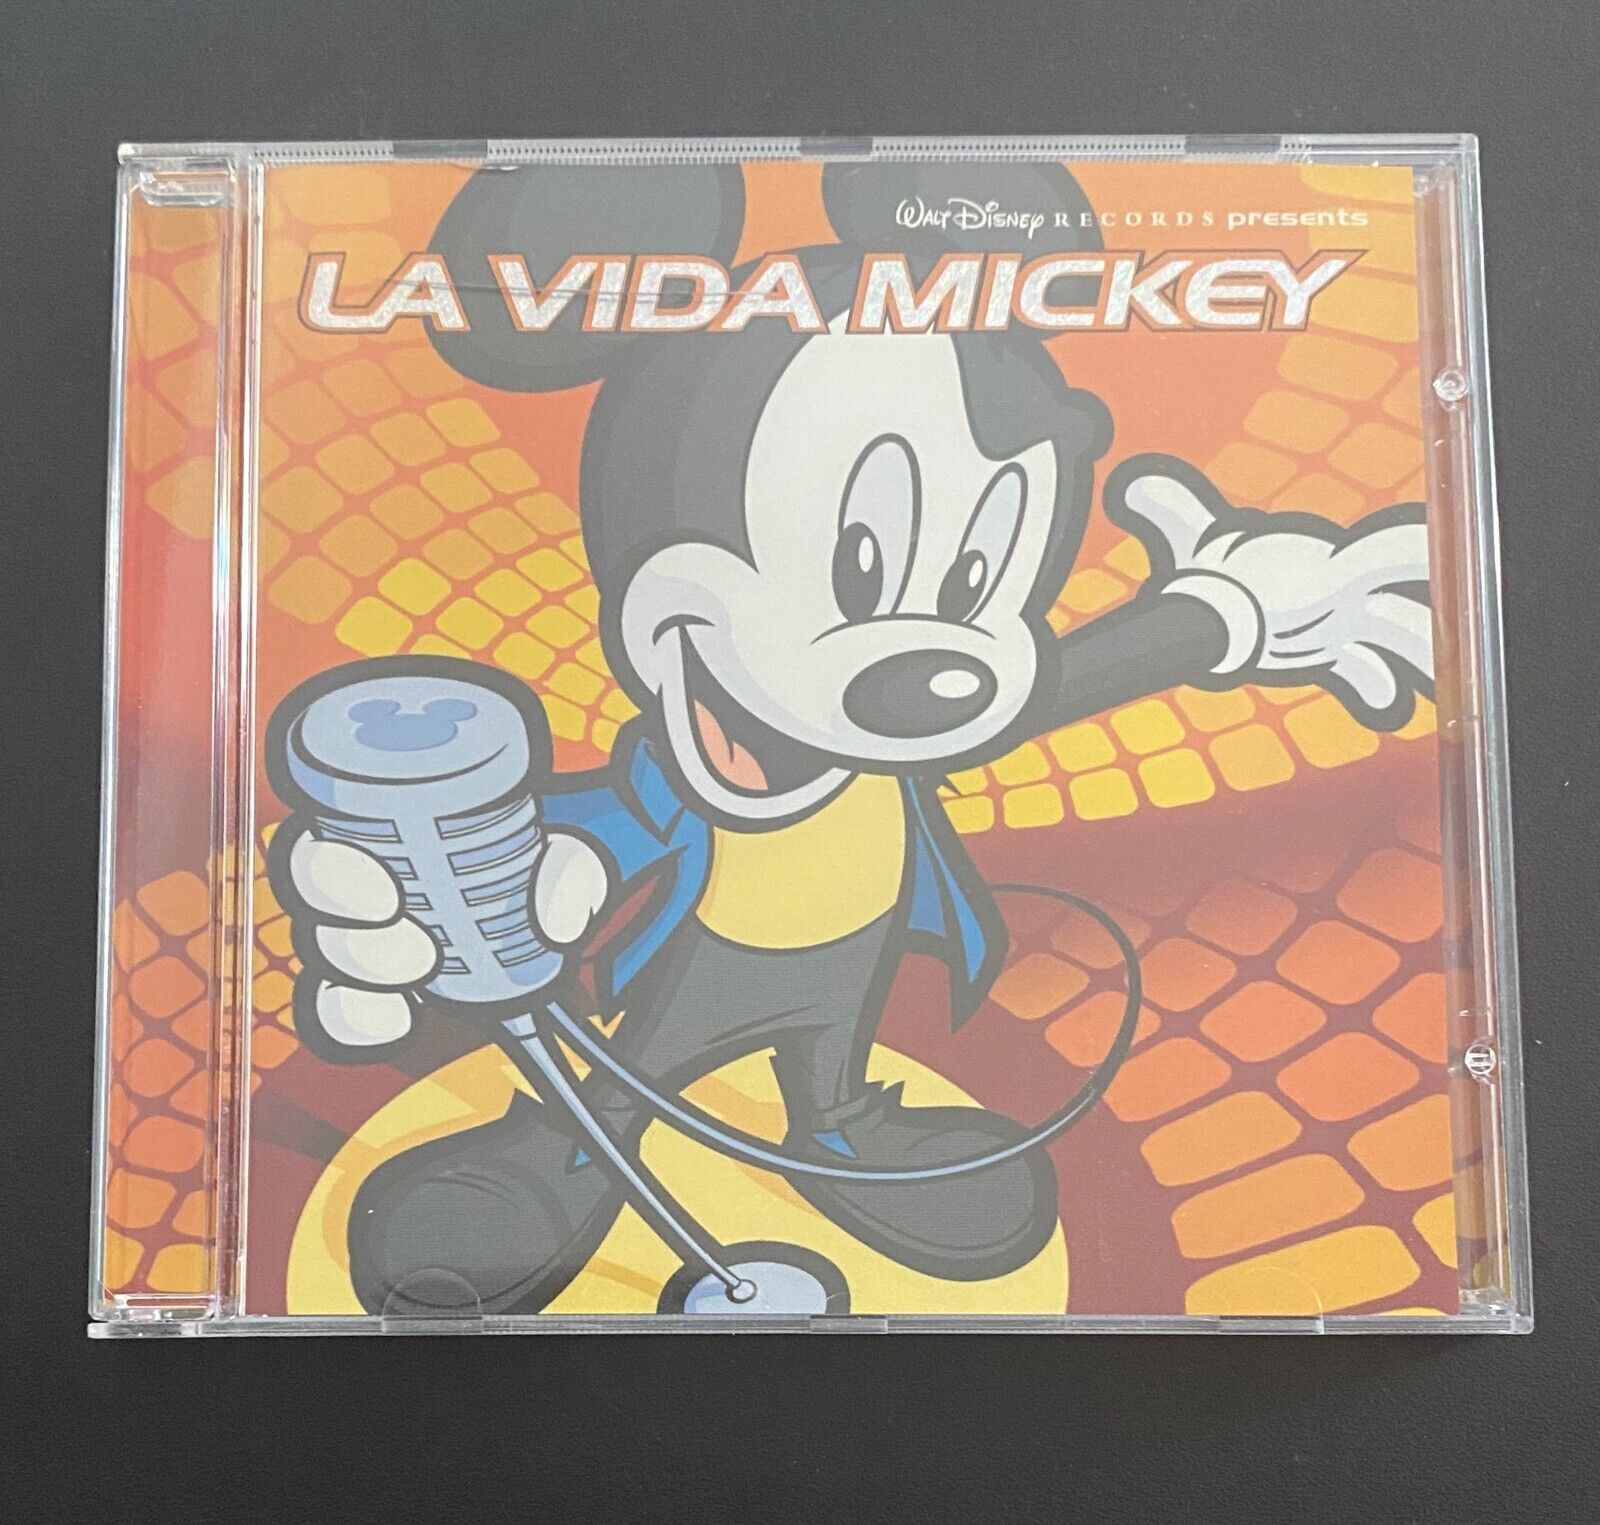 Walt Disney Records Presents La Vida Mickey (CD, 2000, Disney)